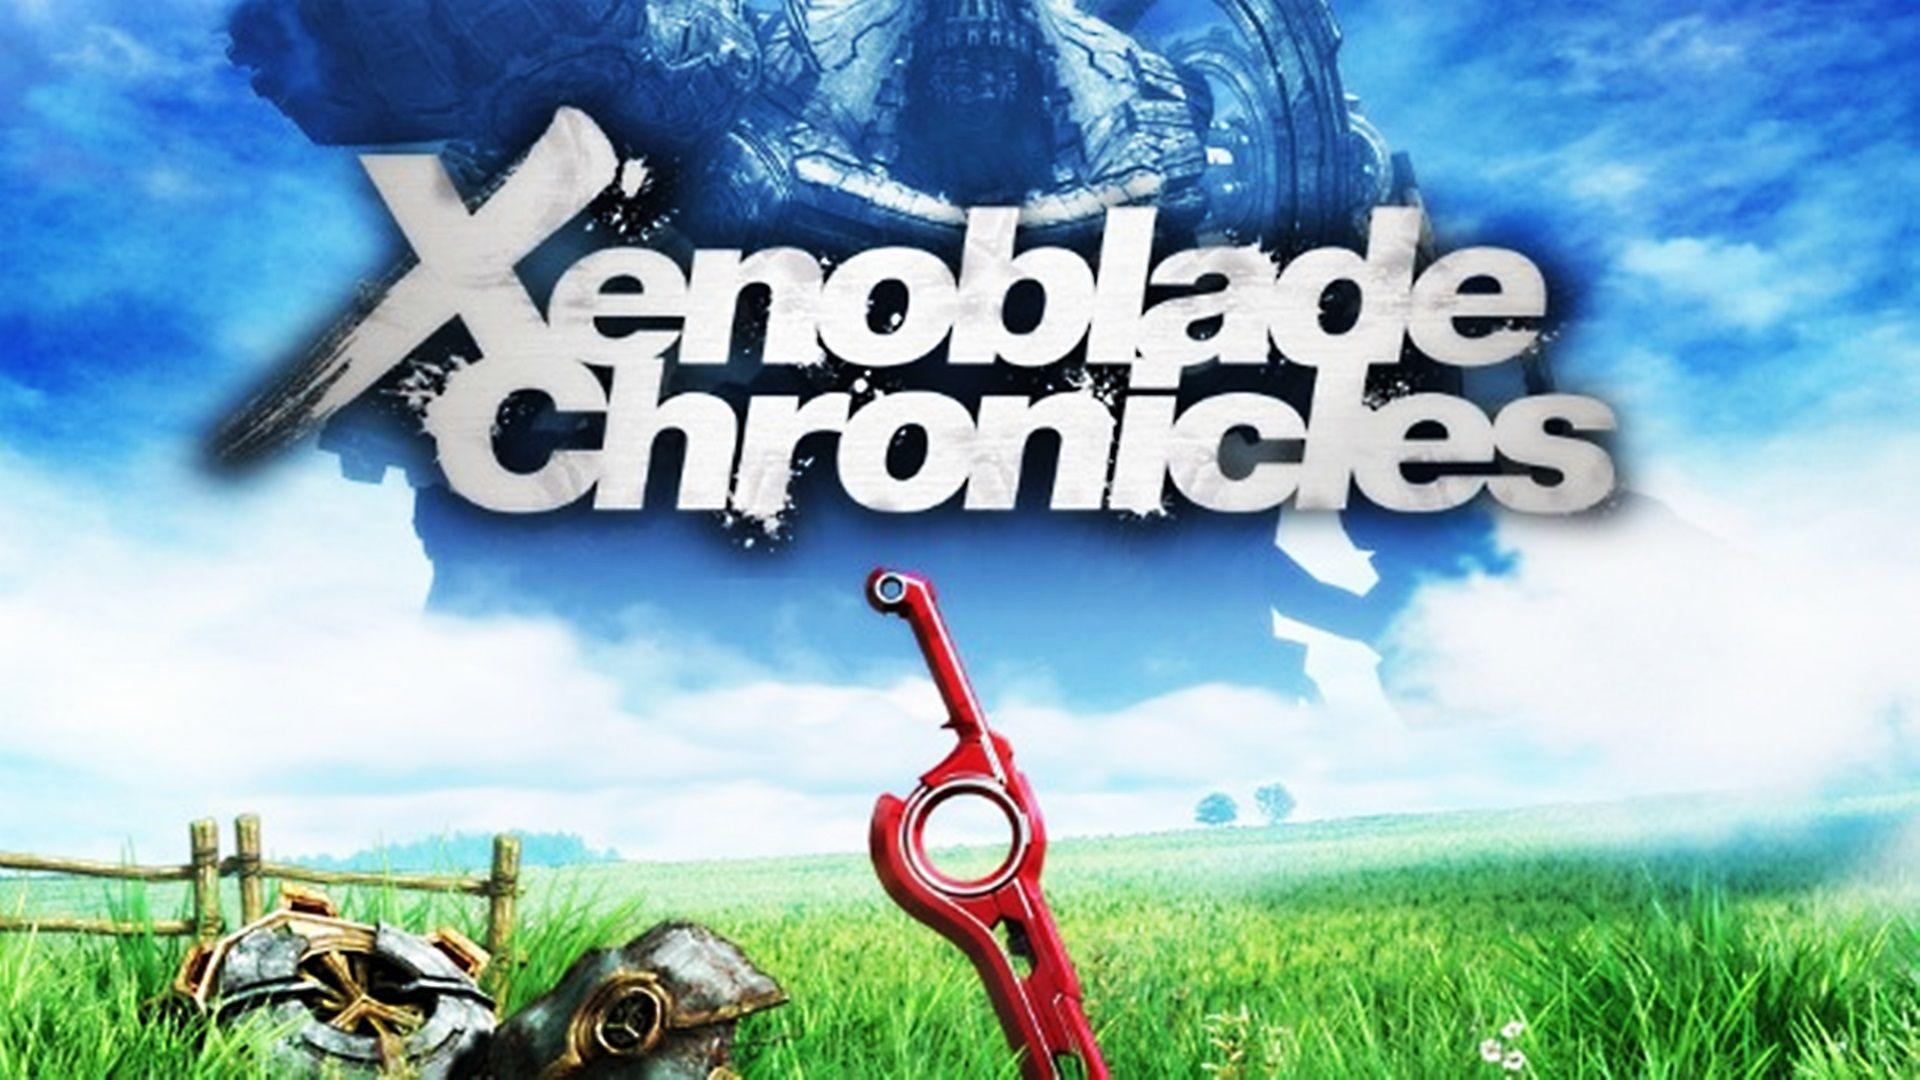 Xenoblade Chronicles Monado Wallpaper